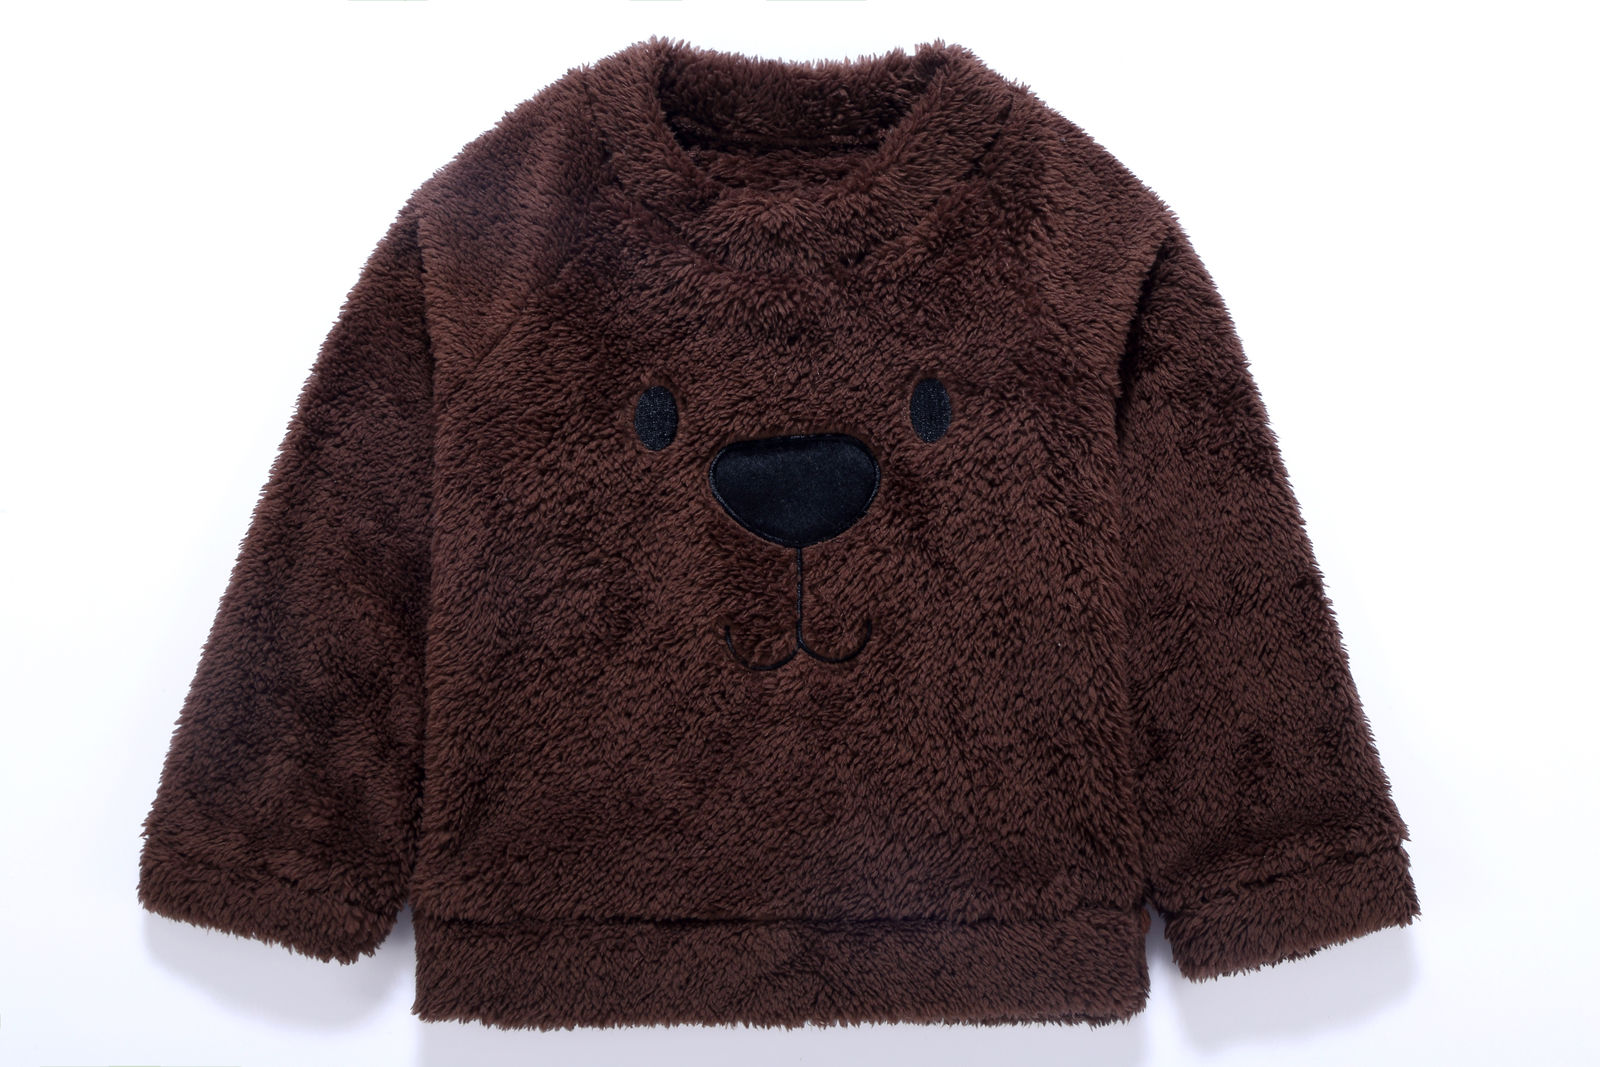 Casaco Infantil Inverno Ursinho casaco Loja Click Certo Marrom Escuro 1-2 anos 38cm 